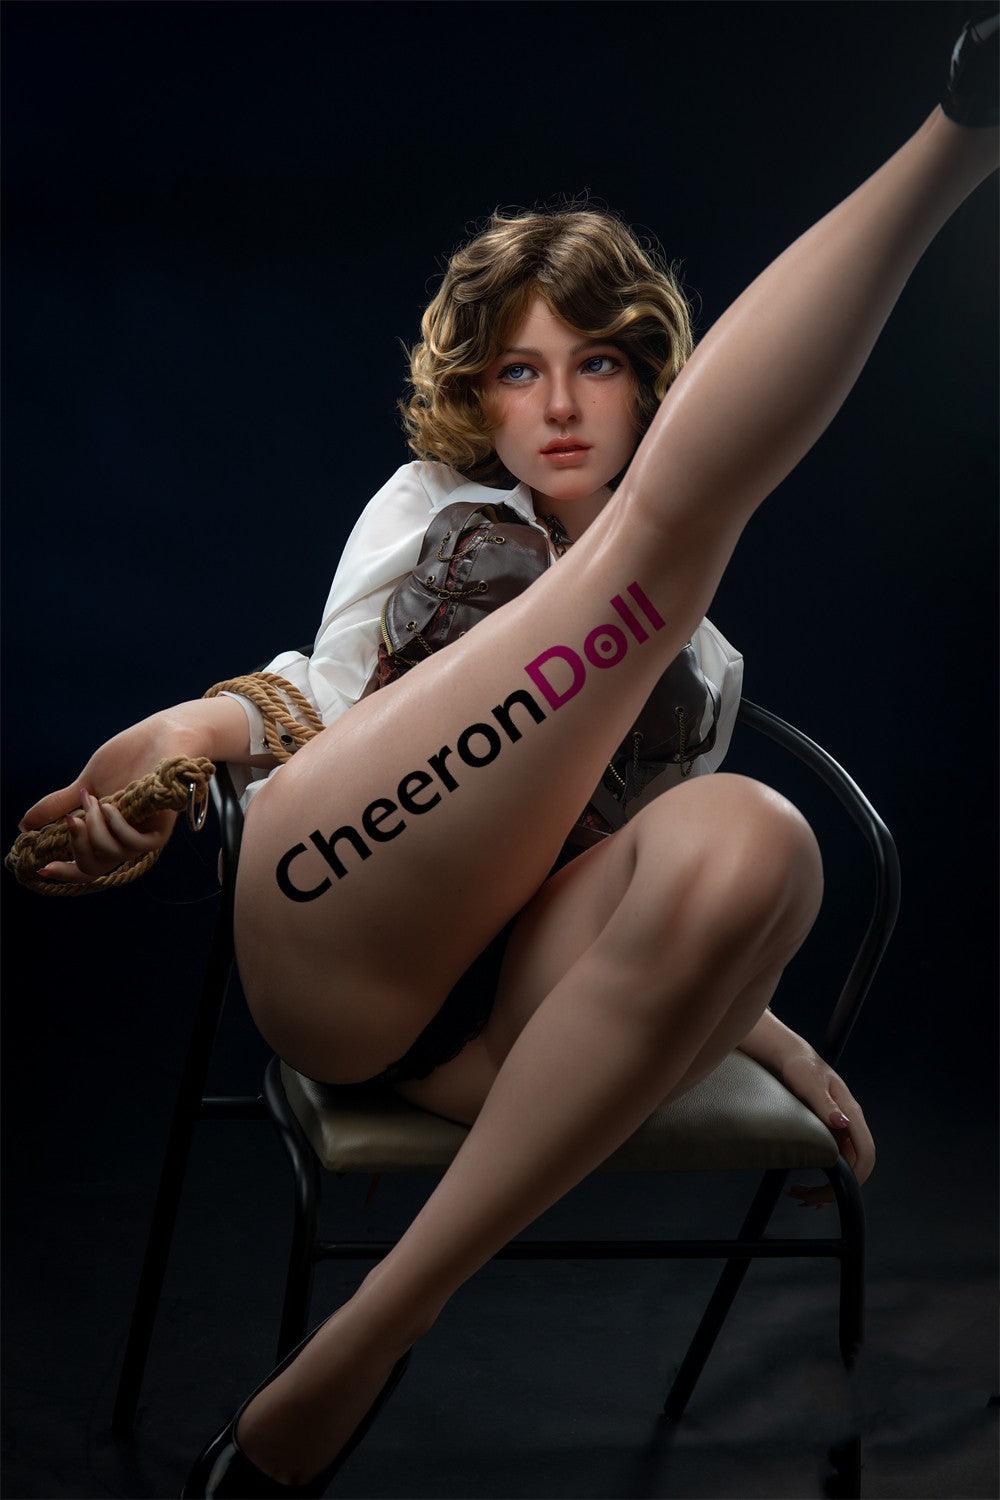 CHEERONDOLL 153CM SILICONE TEEN BLOND SEX DOLL S29 FENNY - Cheeron Doll